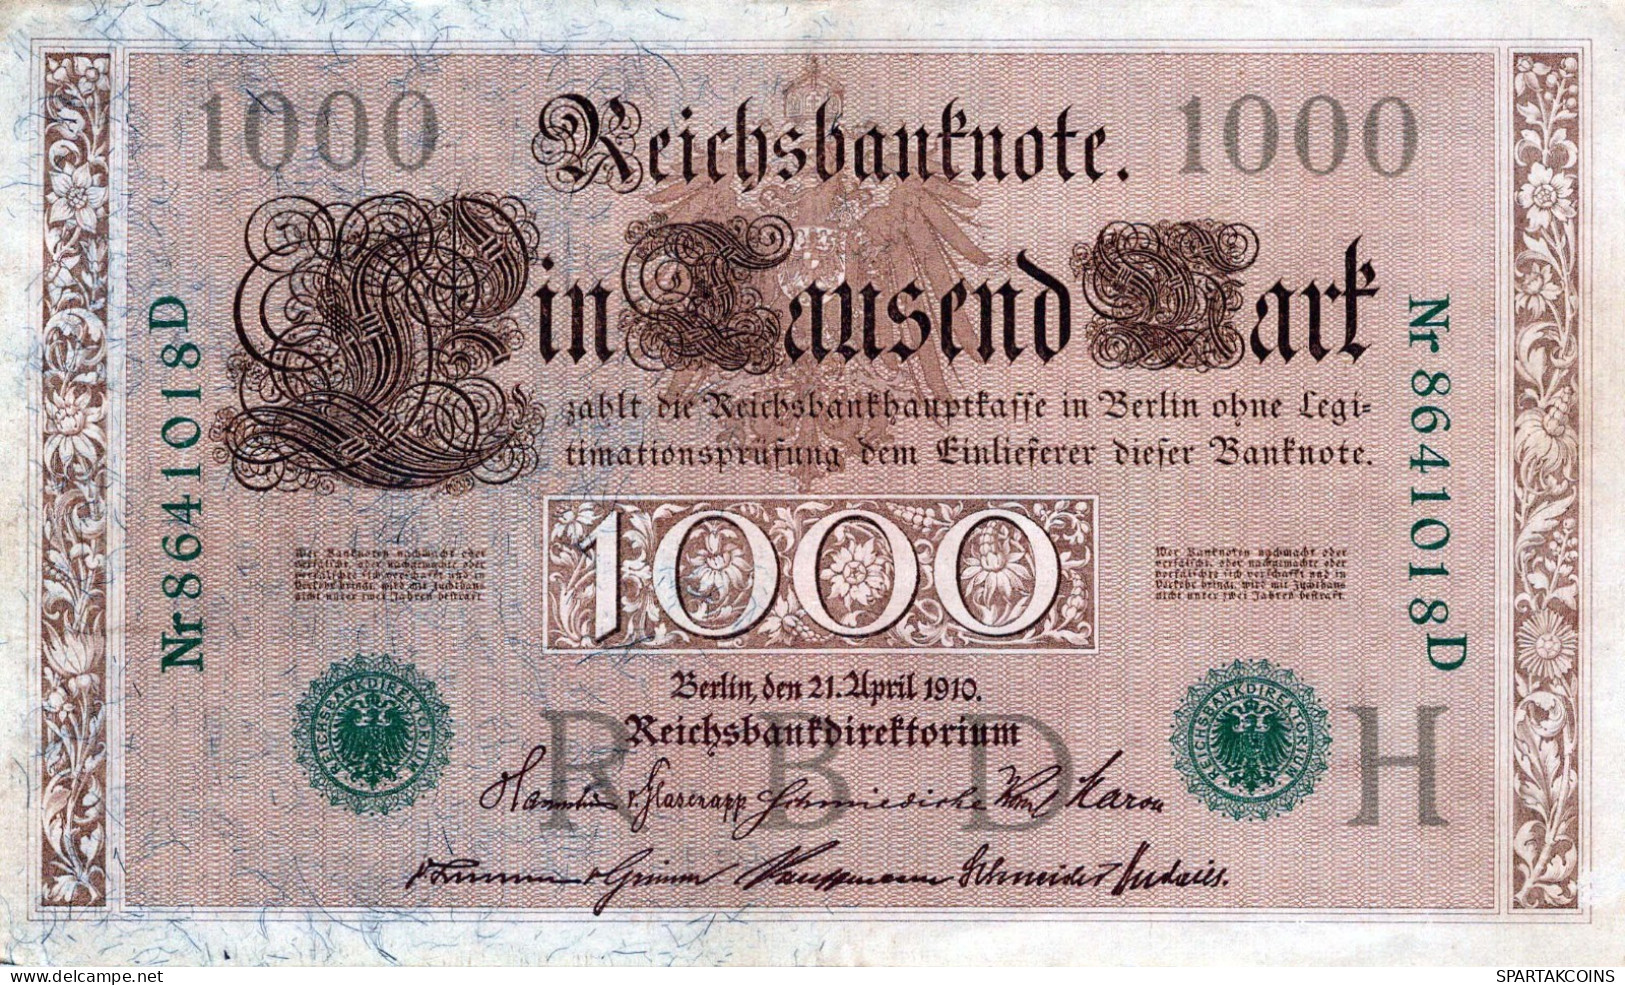 1000 MARK 1910 DEUTSCHLAND Papiergeld Banknote #PL369 - [11] Lokale Uitgaven